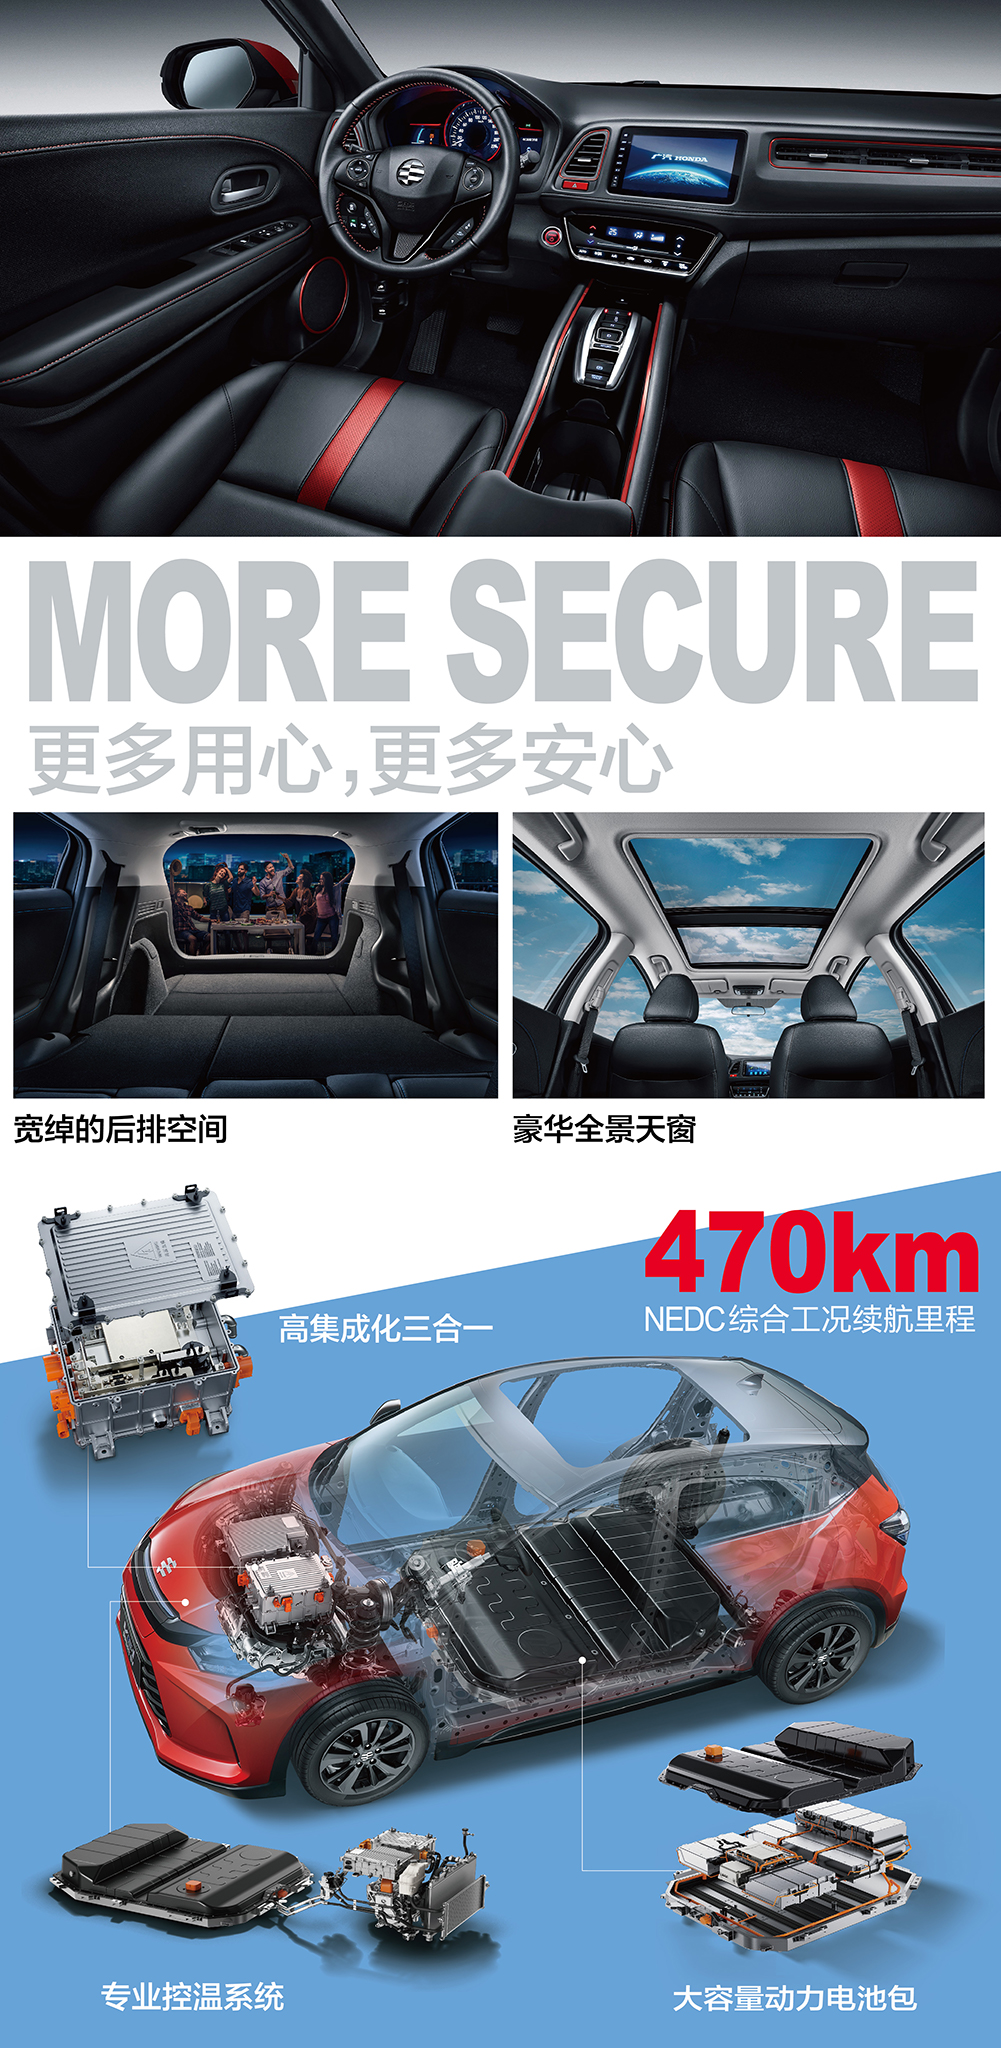 广汽Honda纯电动VE-1+免费试用,评测